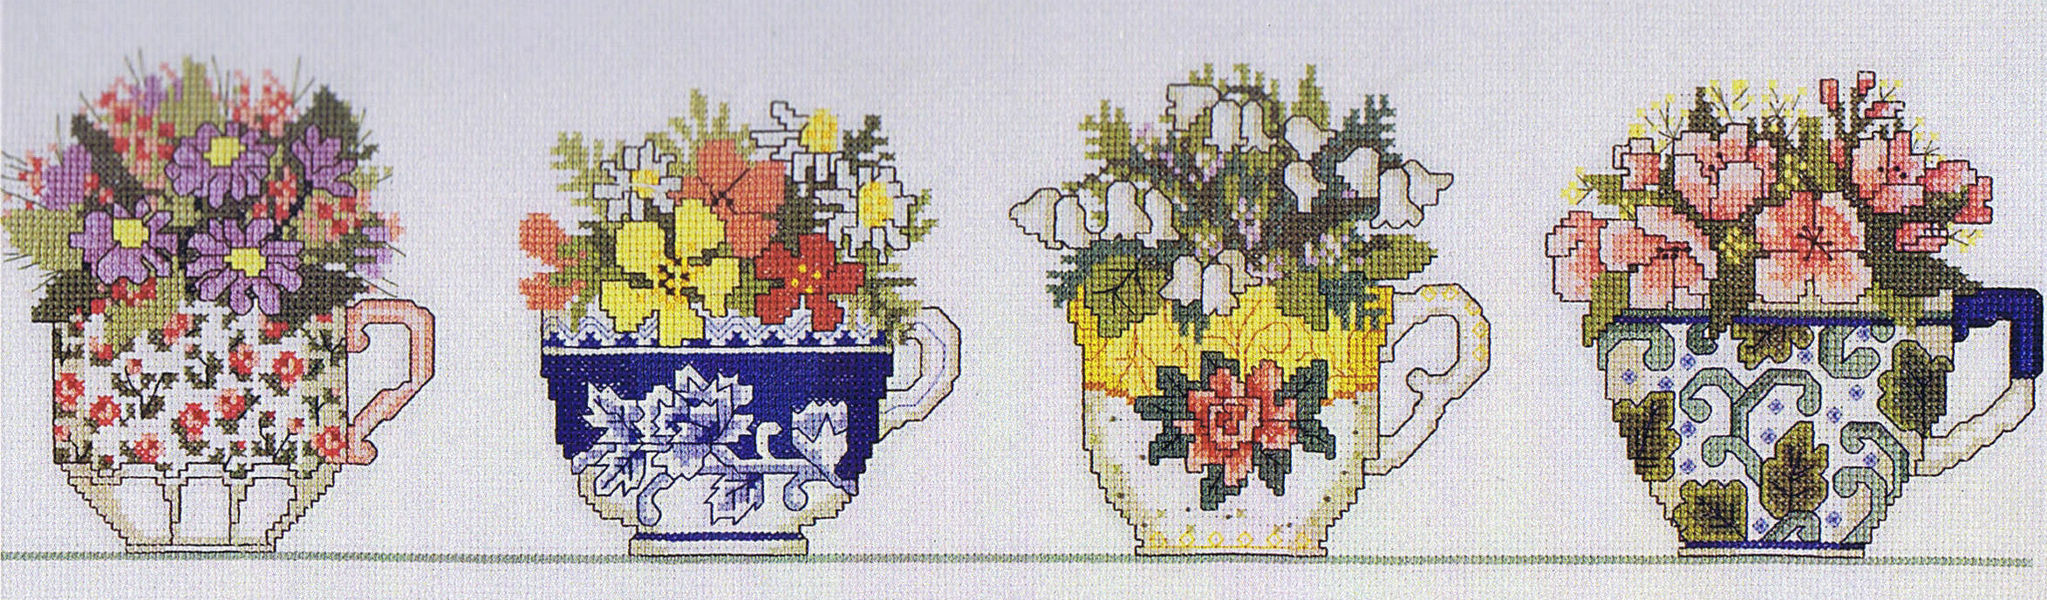 Row of Teacups